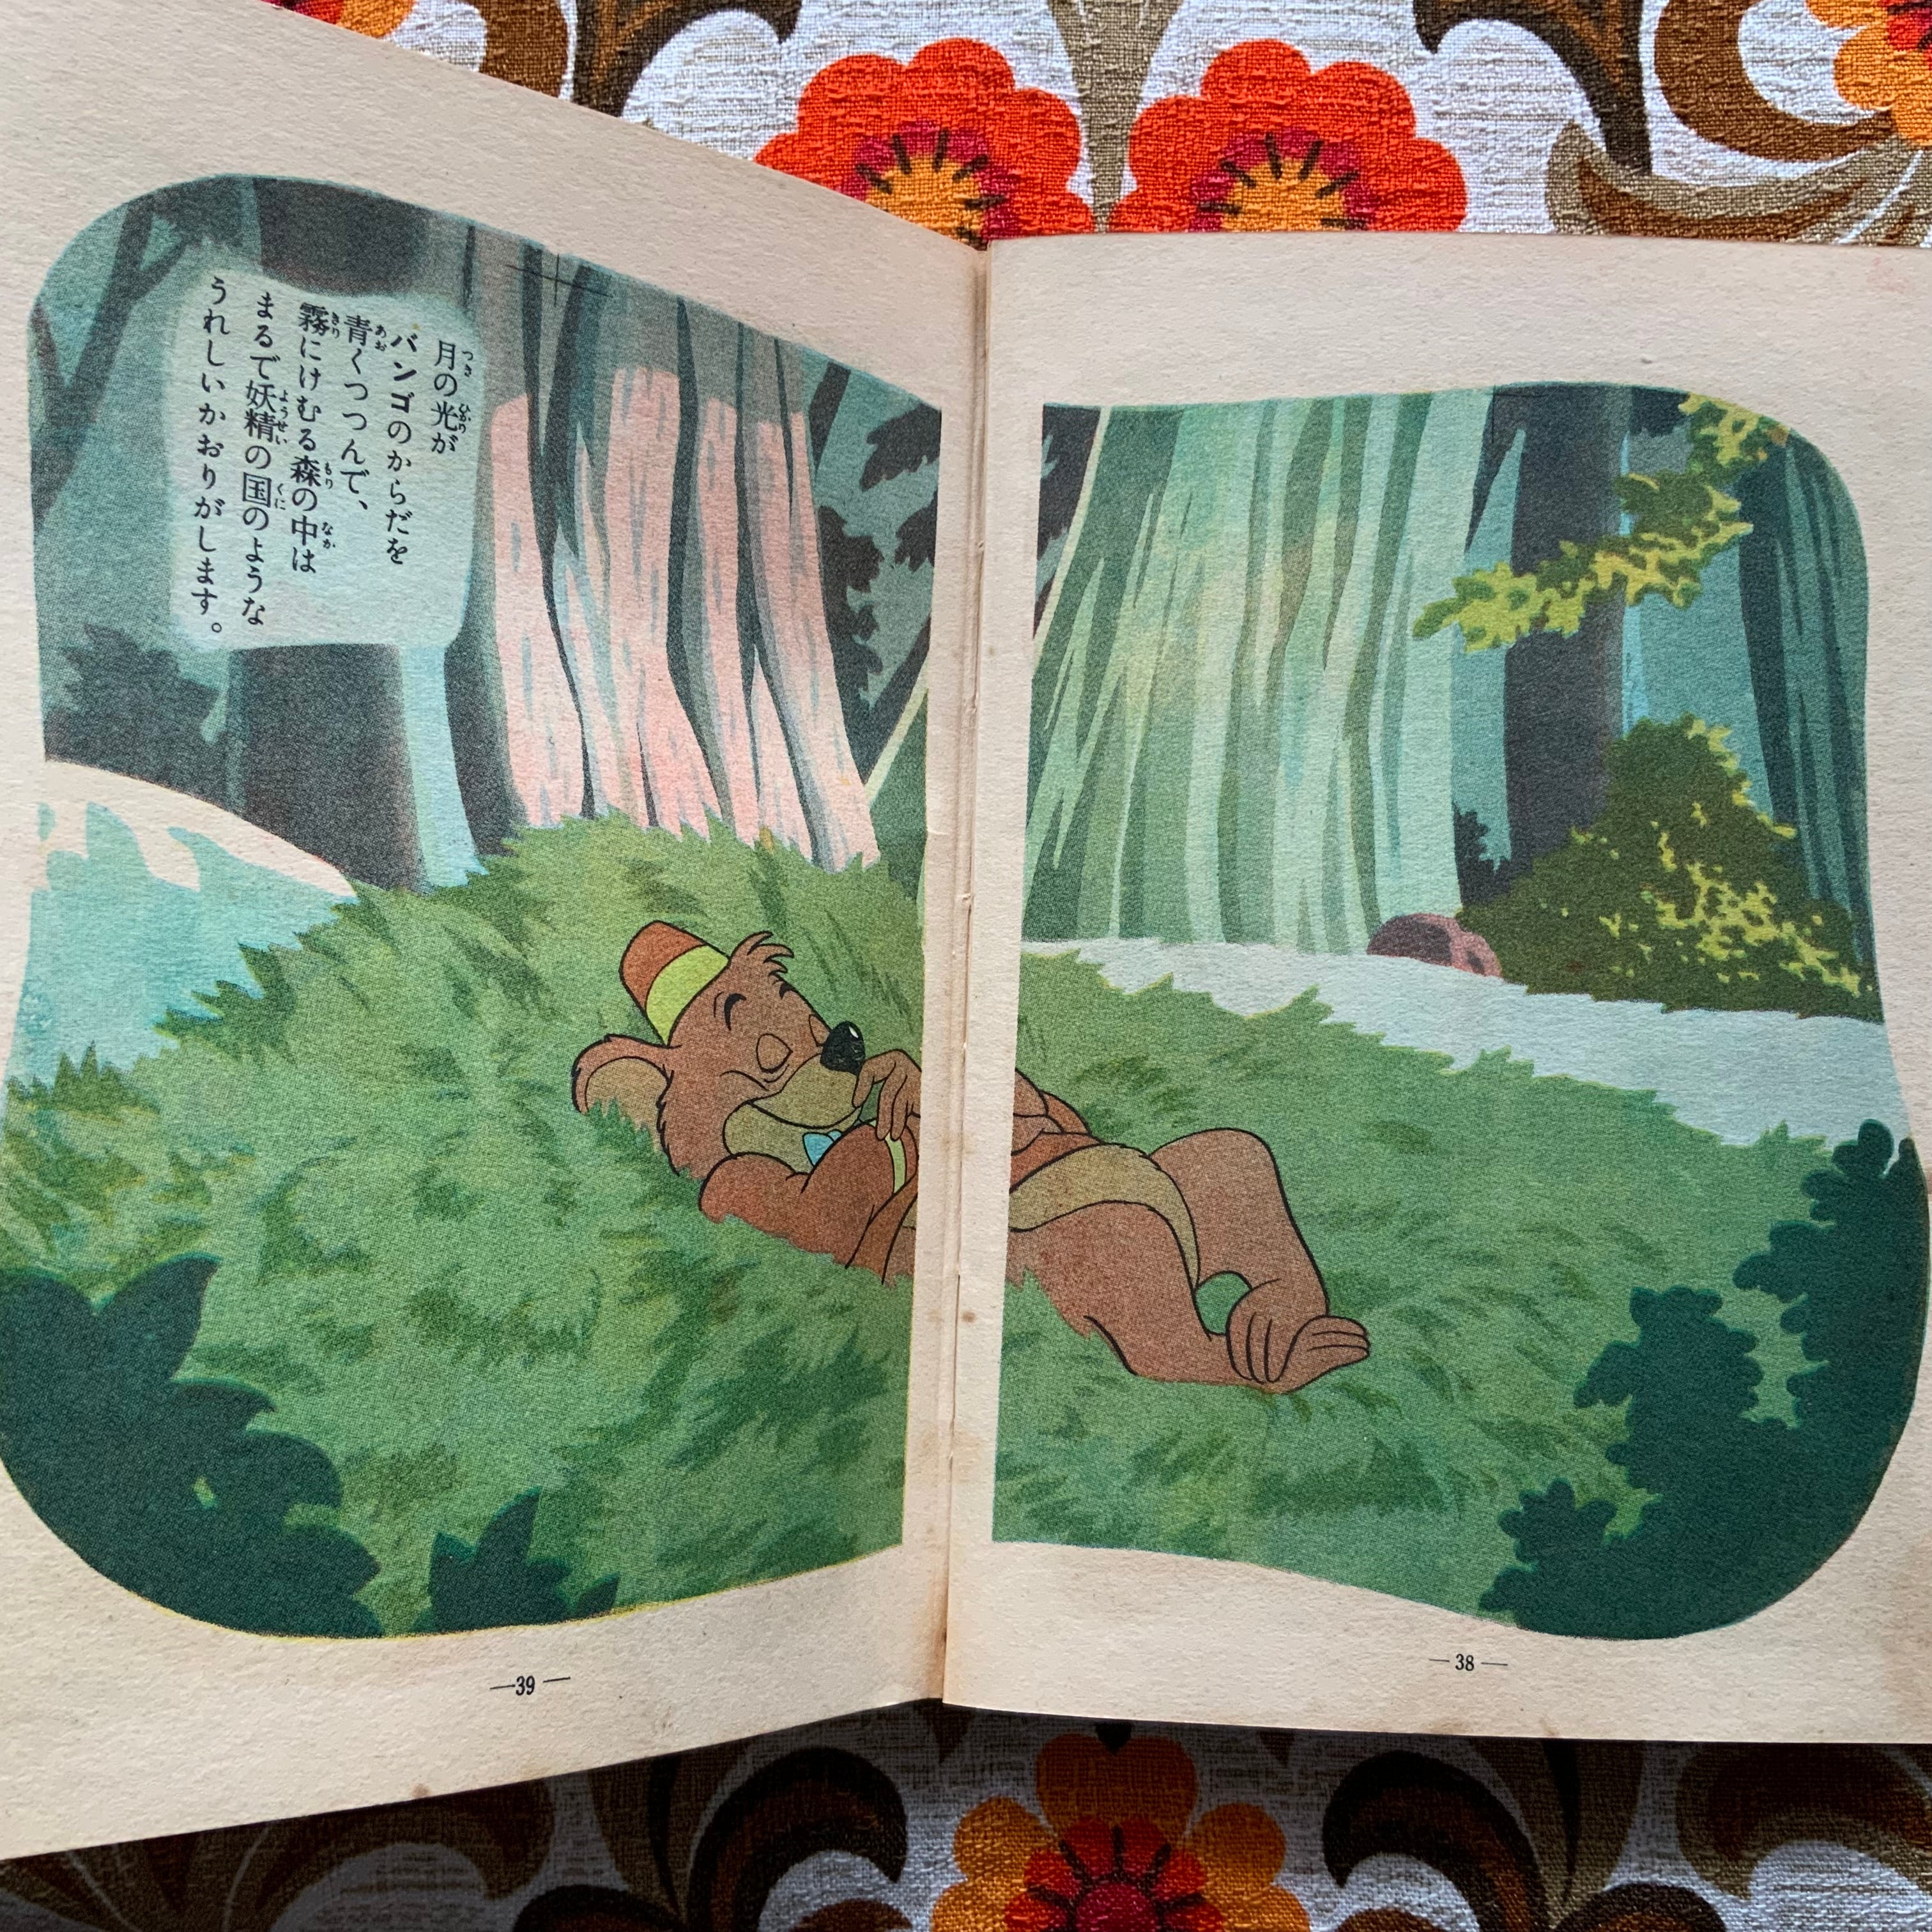 昭和29年初版 ディズニー傑作全集2「こぐま物語」トモブック社 内野純